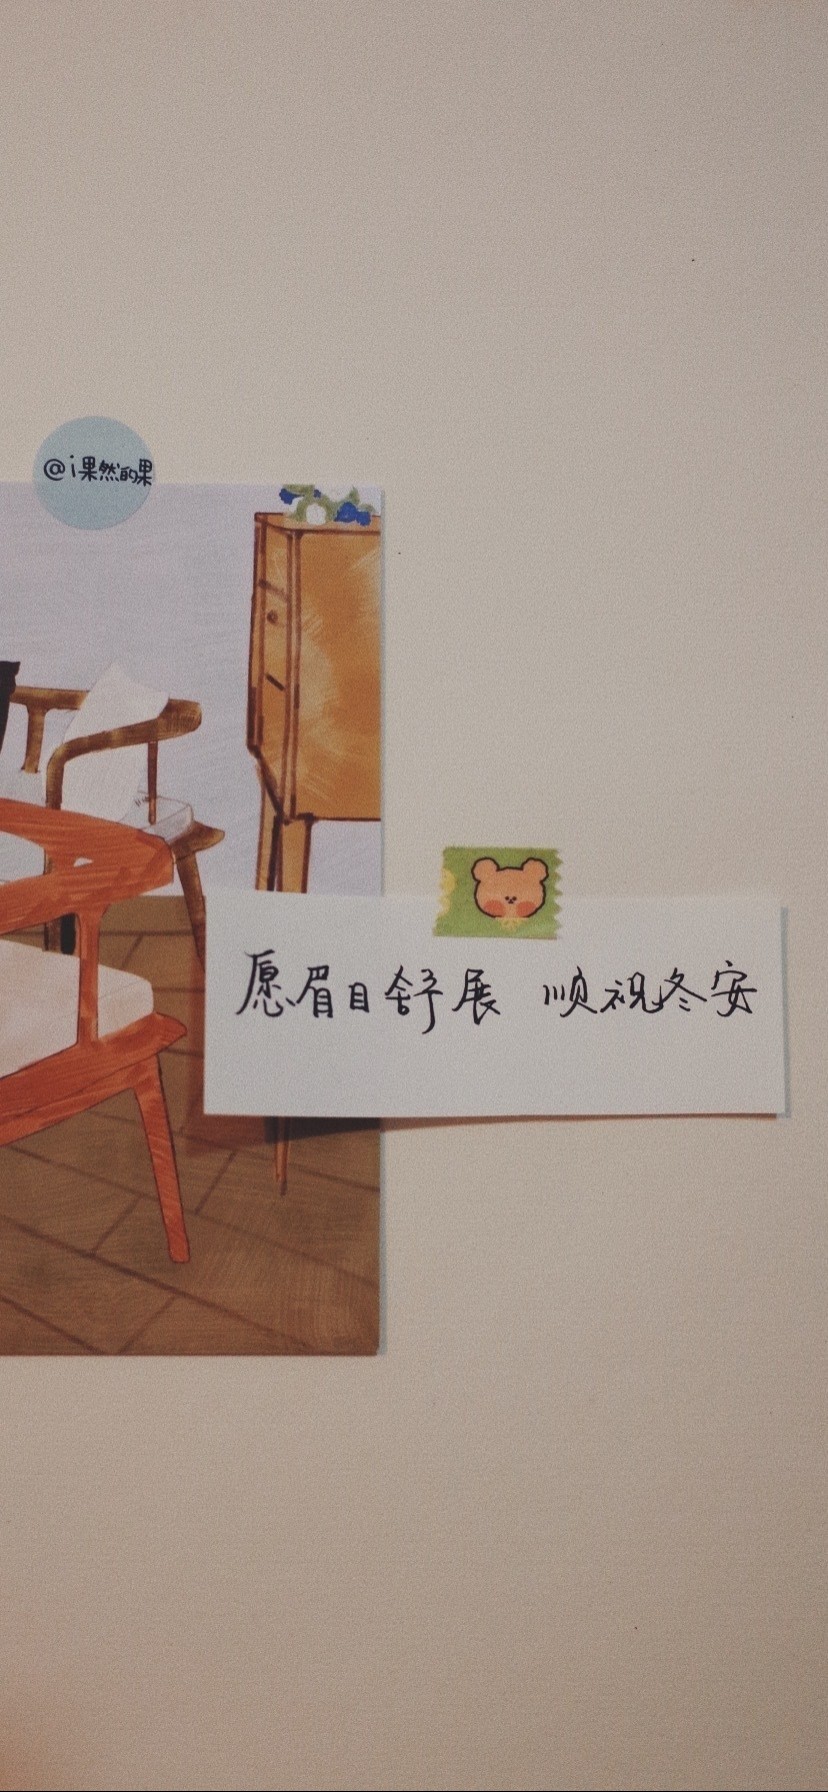 日系文艺的简约文字手机壁纸